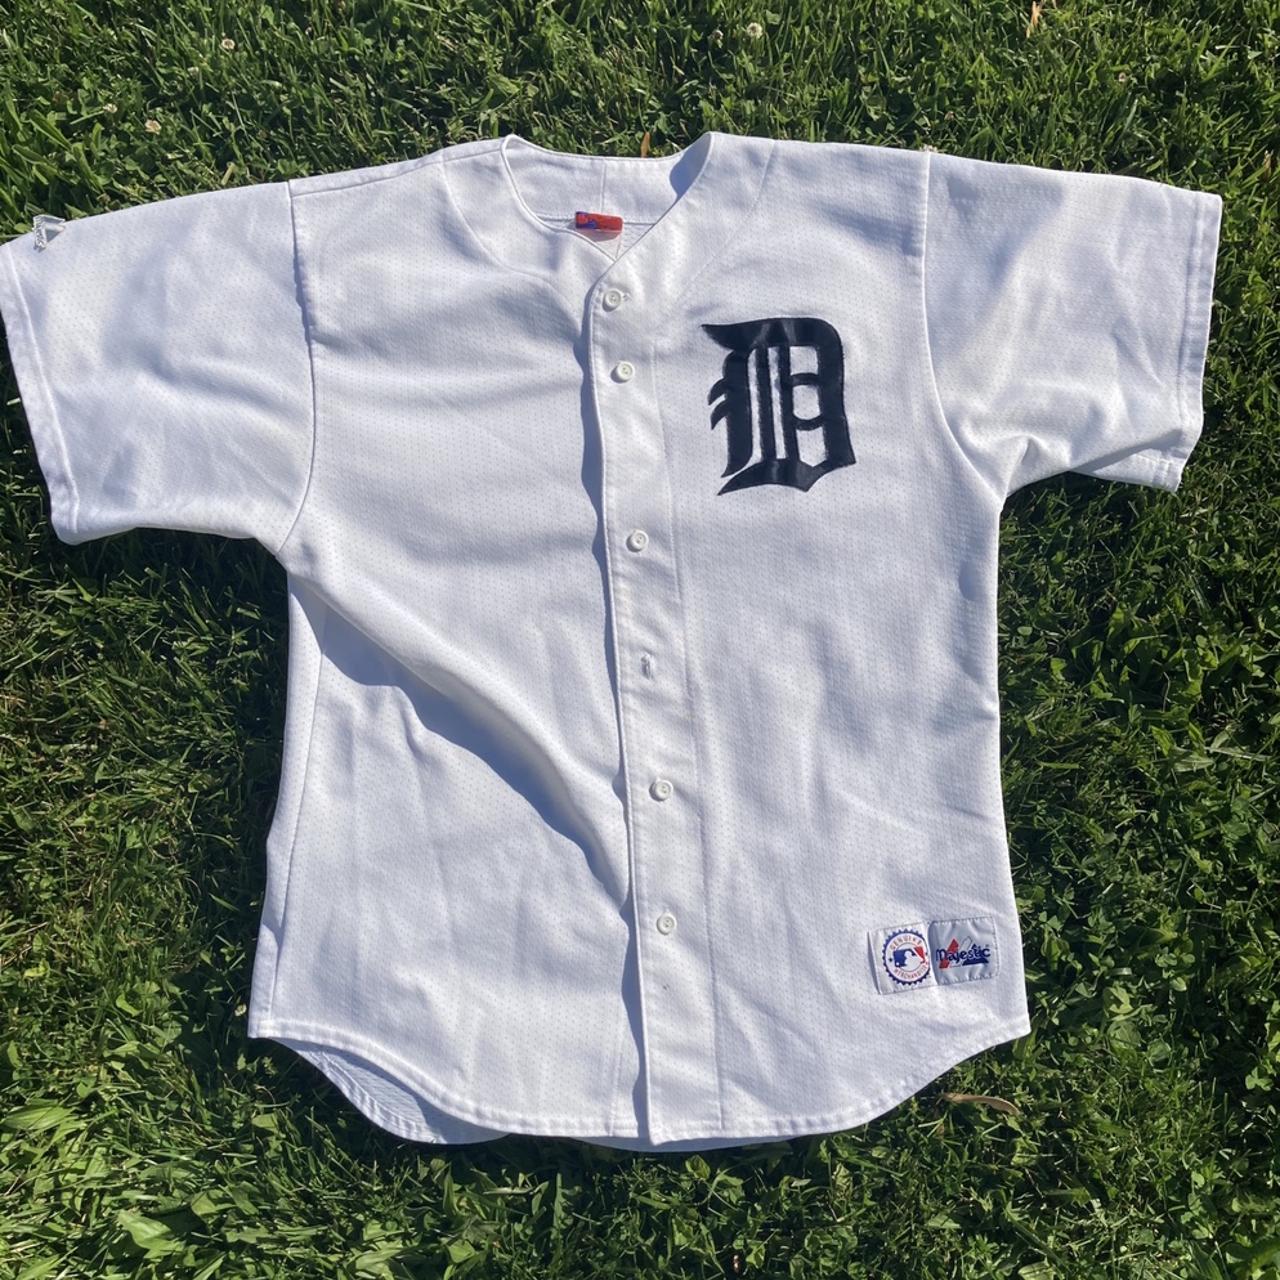 Vintage Detroit Tigers embroidered baseball jersey - Depop